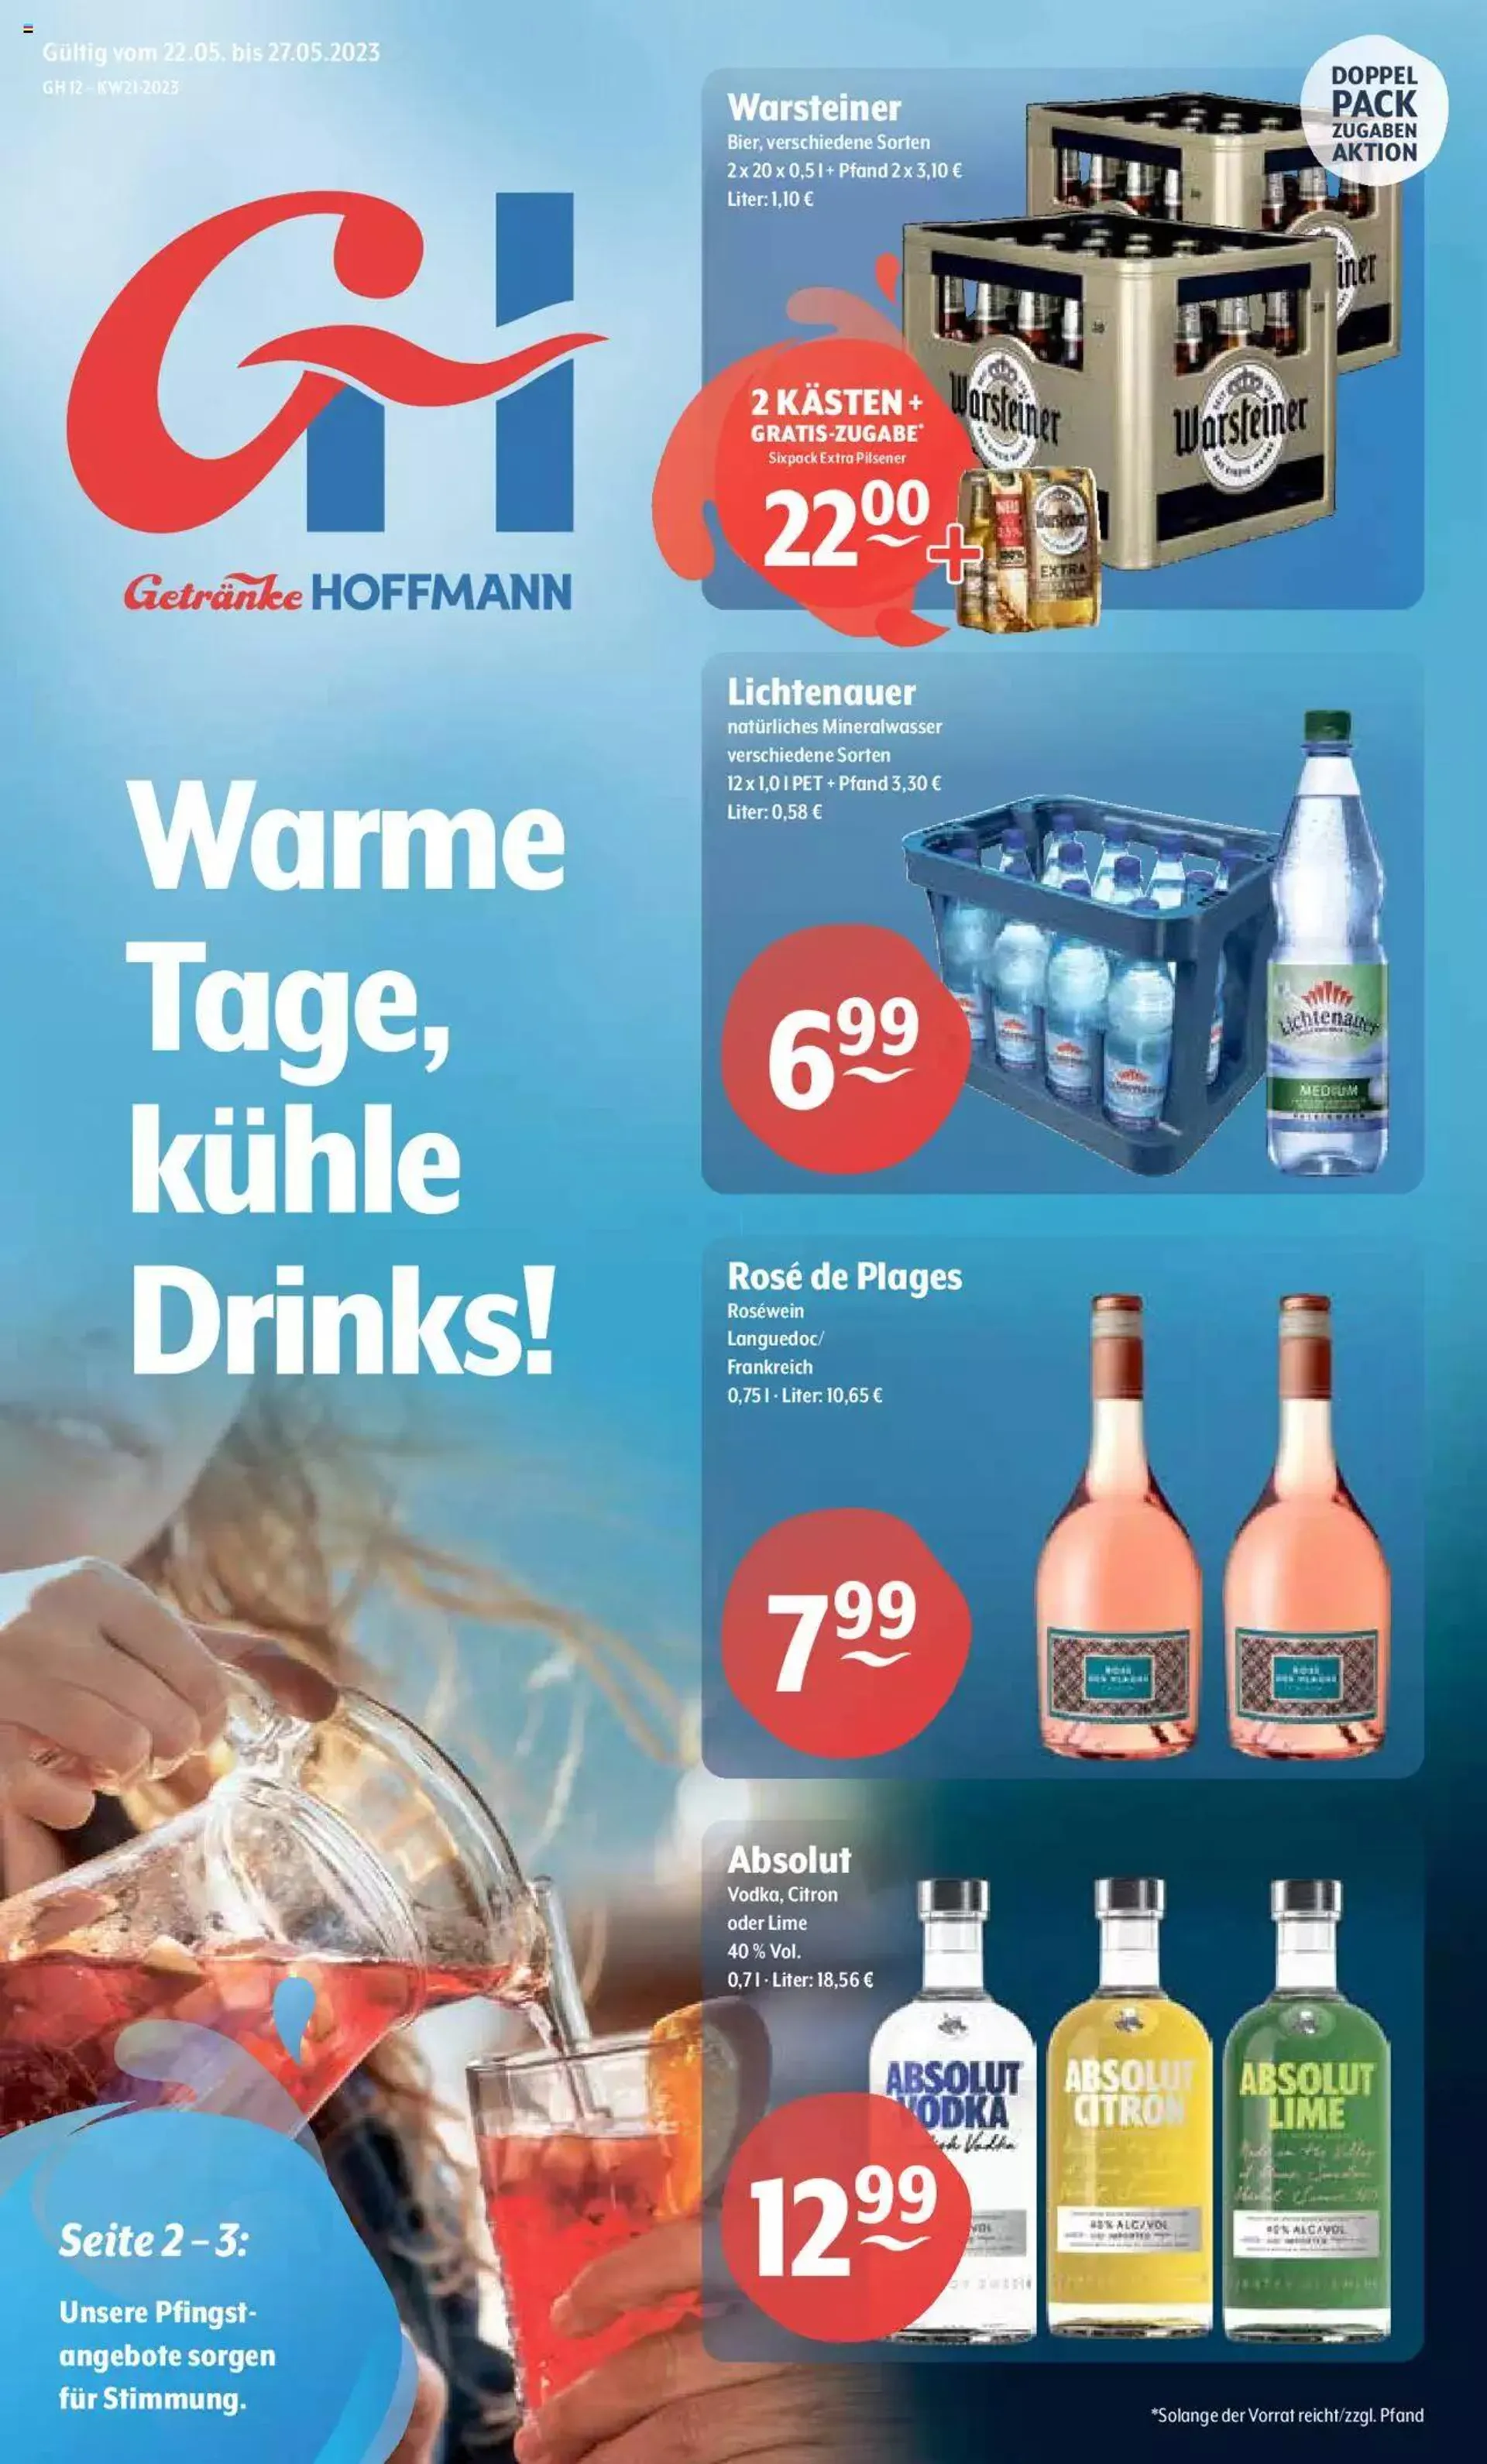 Getränke Hoffmann - Brandenburg - 0